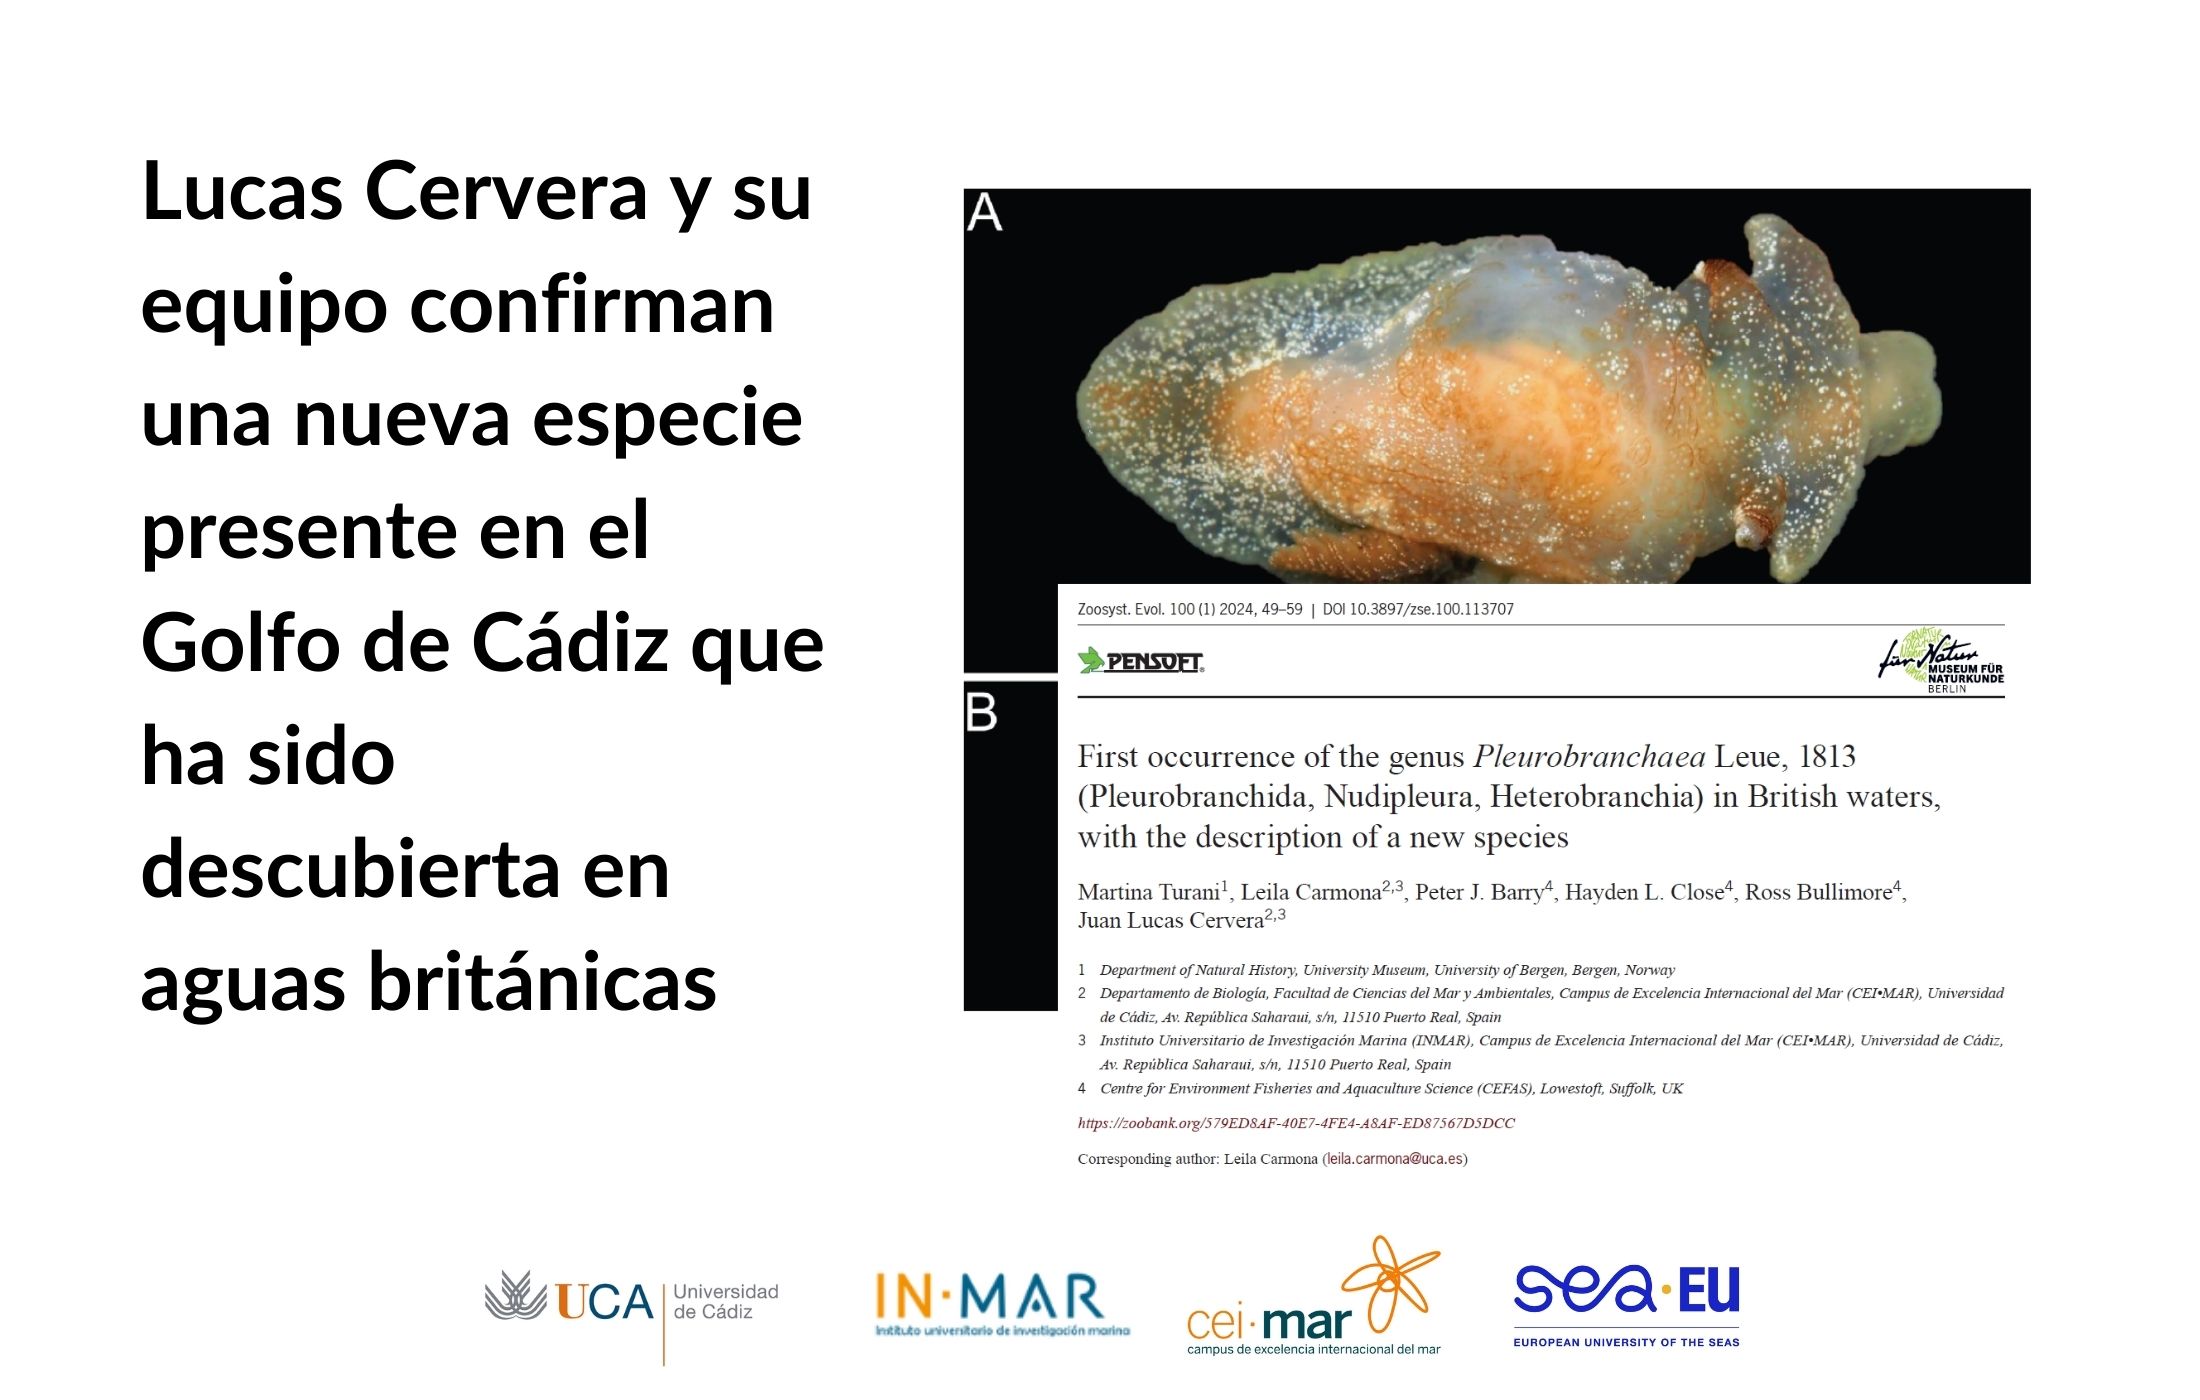 Lucas Cervera y su equipo confirman una nueva especie presente en el Golfo de Cádiz, que ha sido descubierta en aguas británicas